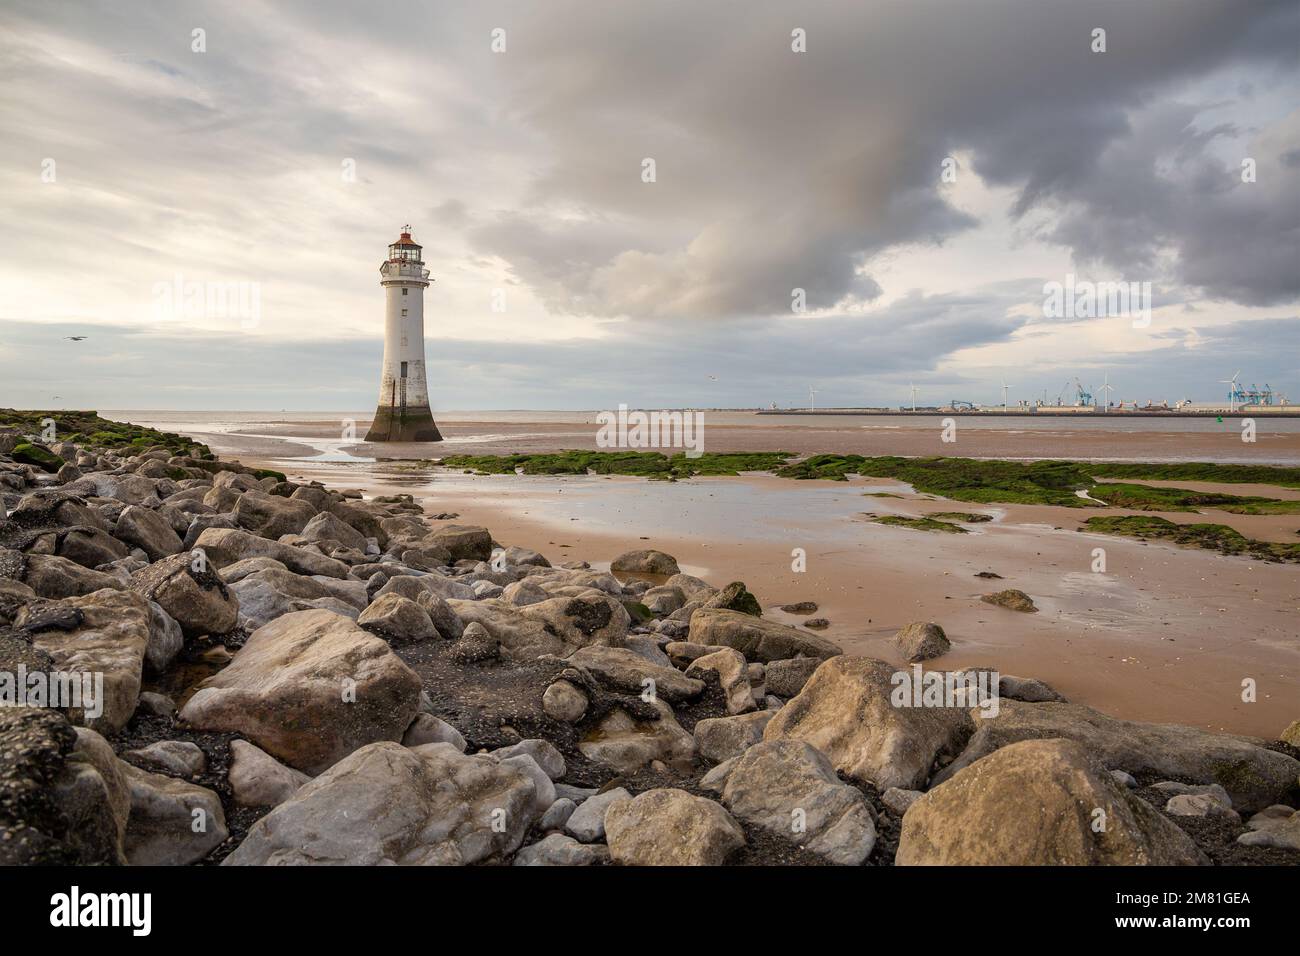 New Brighton, Regno Unito: Faro di Perch Rock con bassa marea. Un simbolo iconico sulla penisola di Wirral. Foto Stock